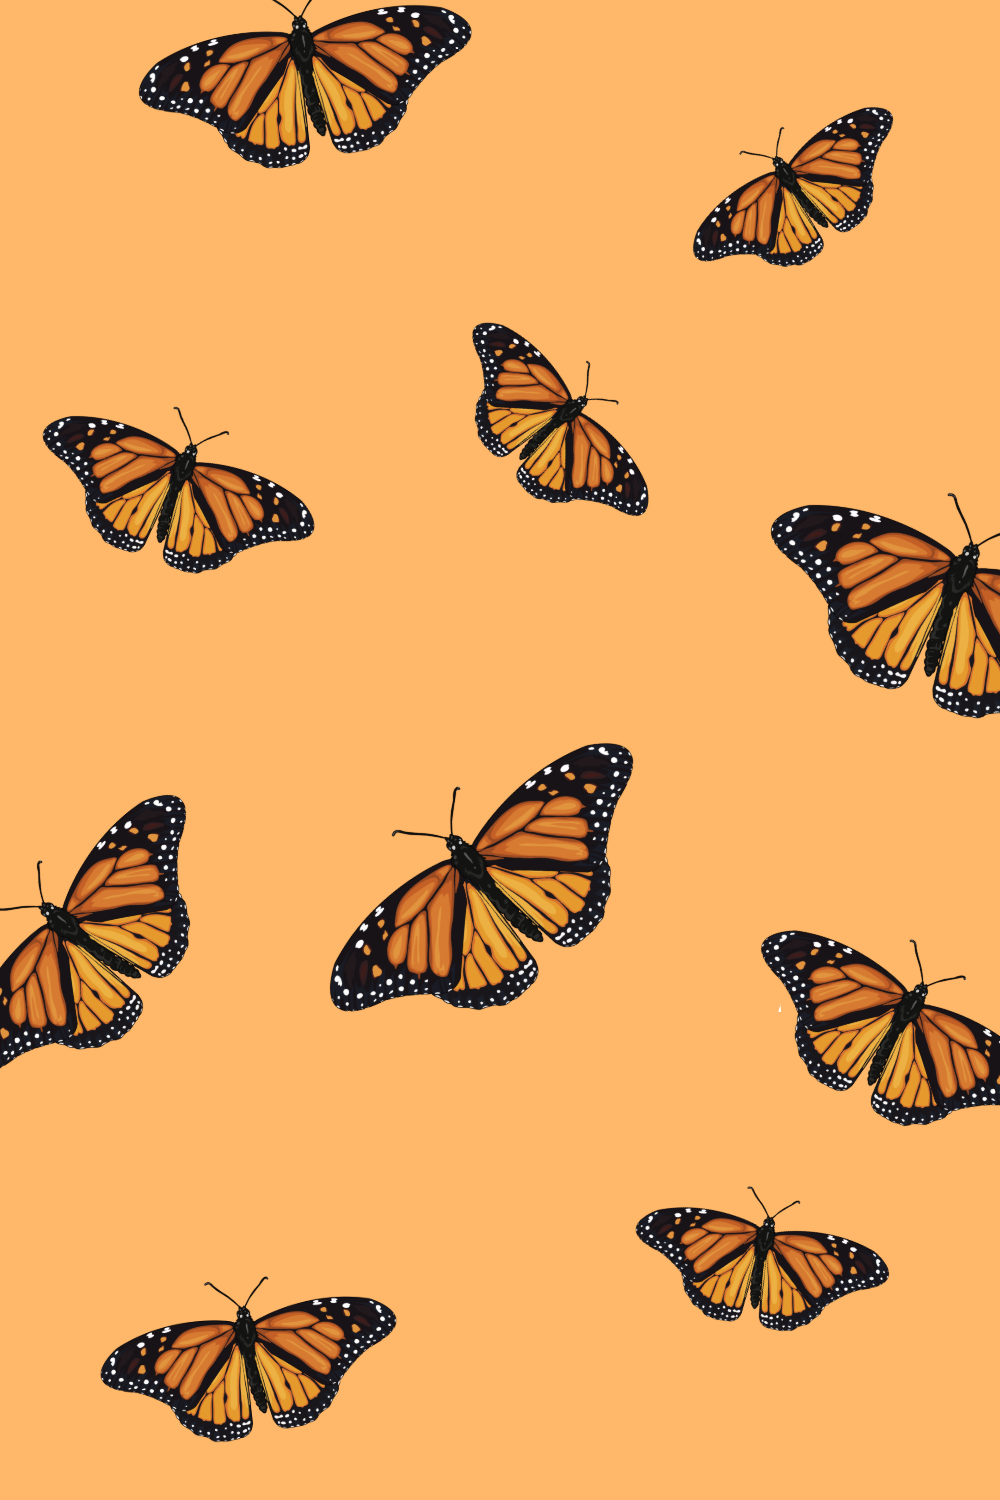 Butterfly Wallpaper Aesthetic - HD Wallpaper 